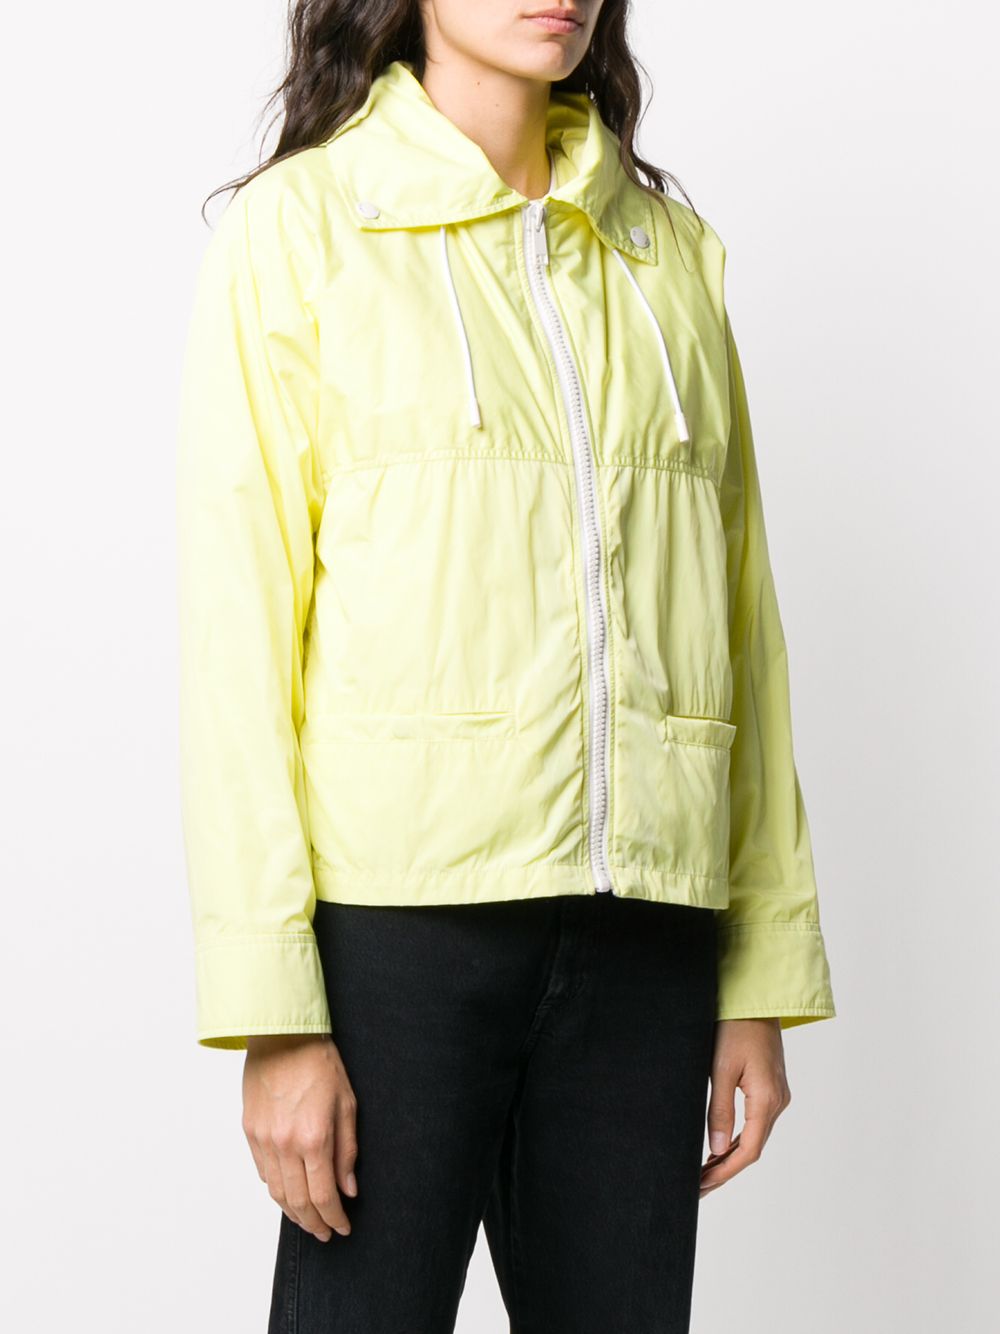 фото Yves salomon army непромокаемая куртка со съемным жилетом